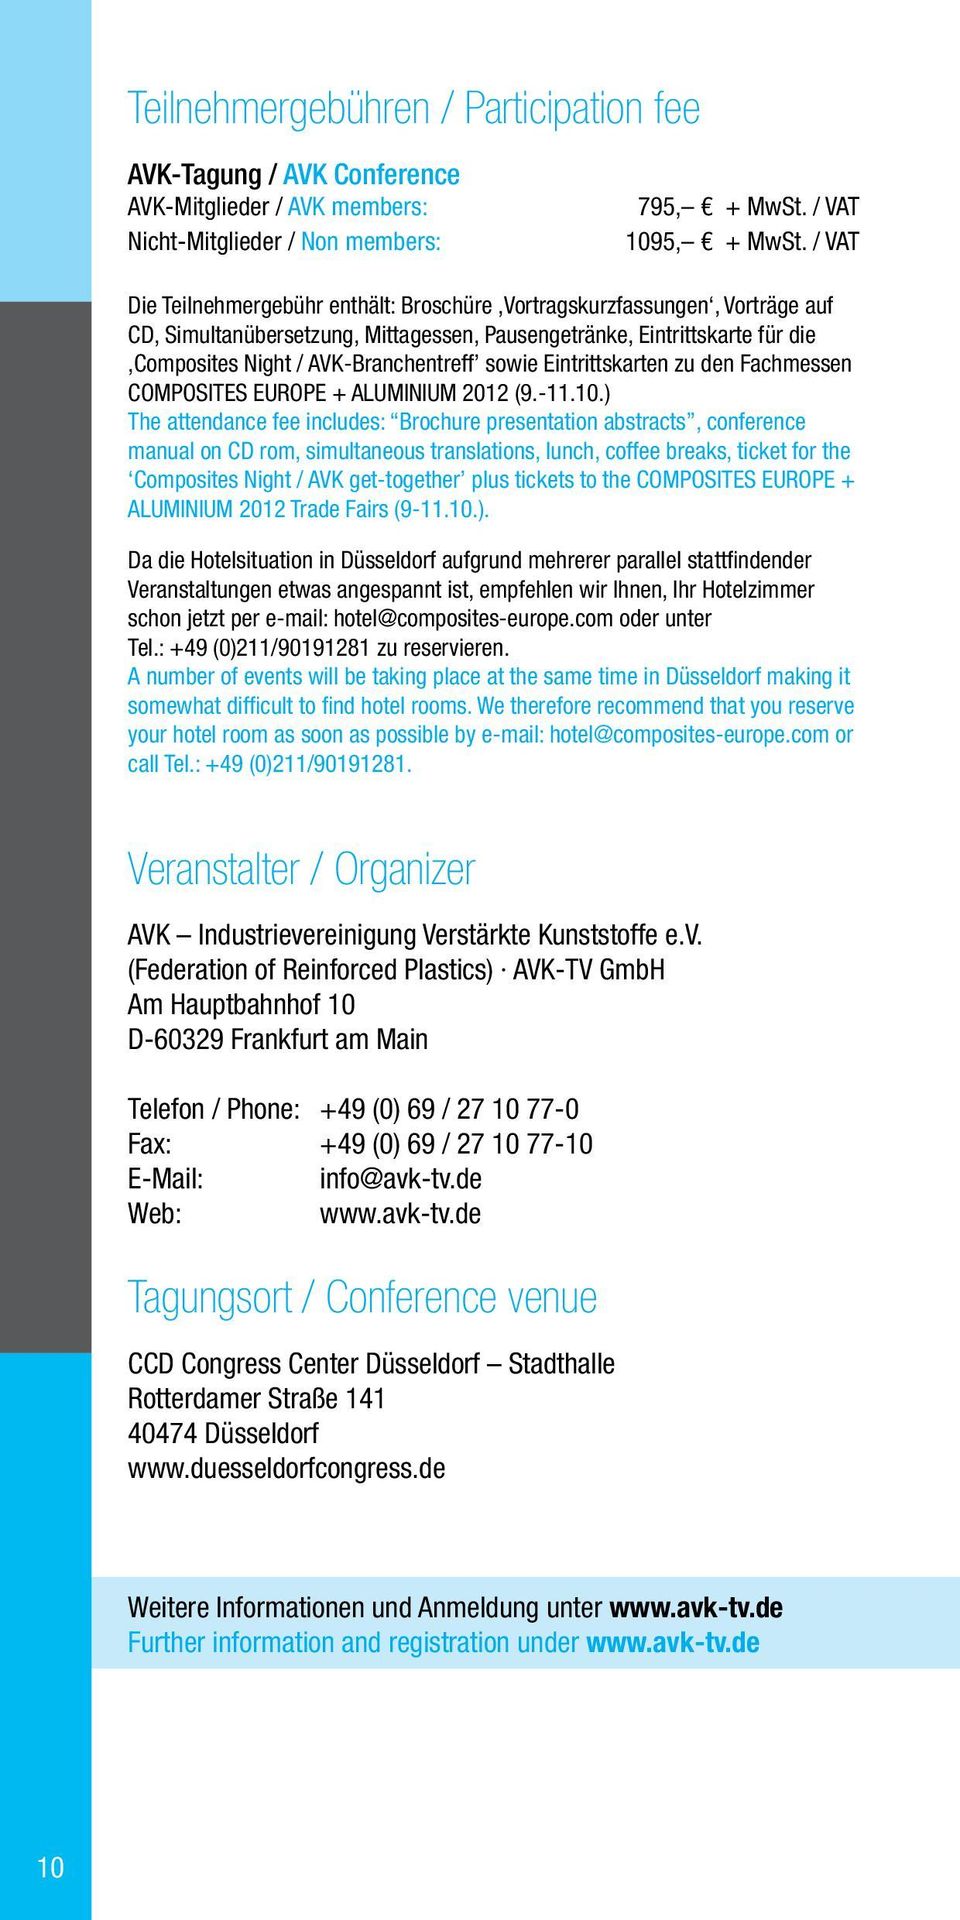 sowie Eintrittskarten zu den Fachmessen COMPOSITES EUROPE + Aluminium 2012 (9.-11.10.